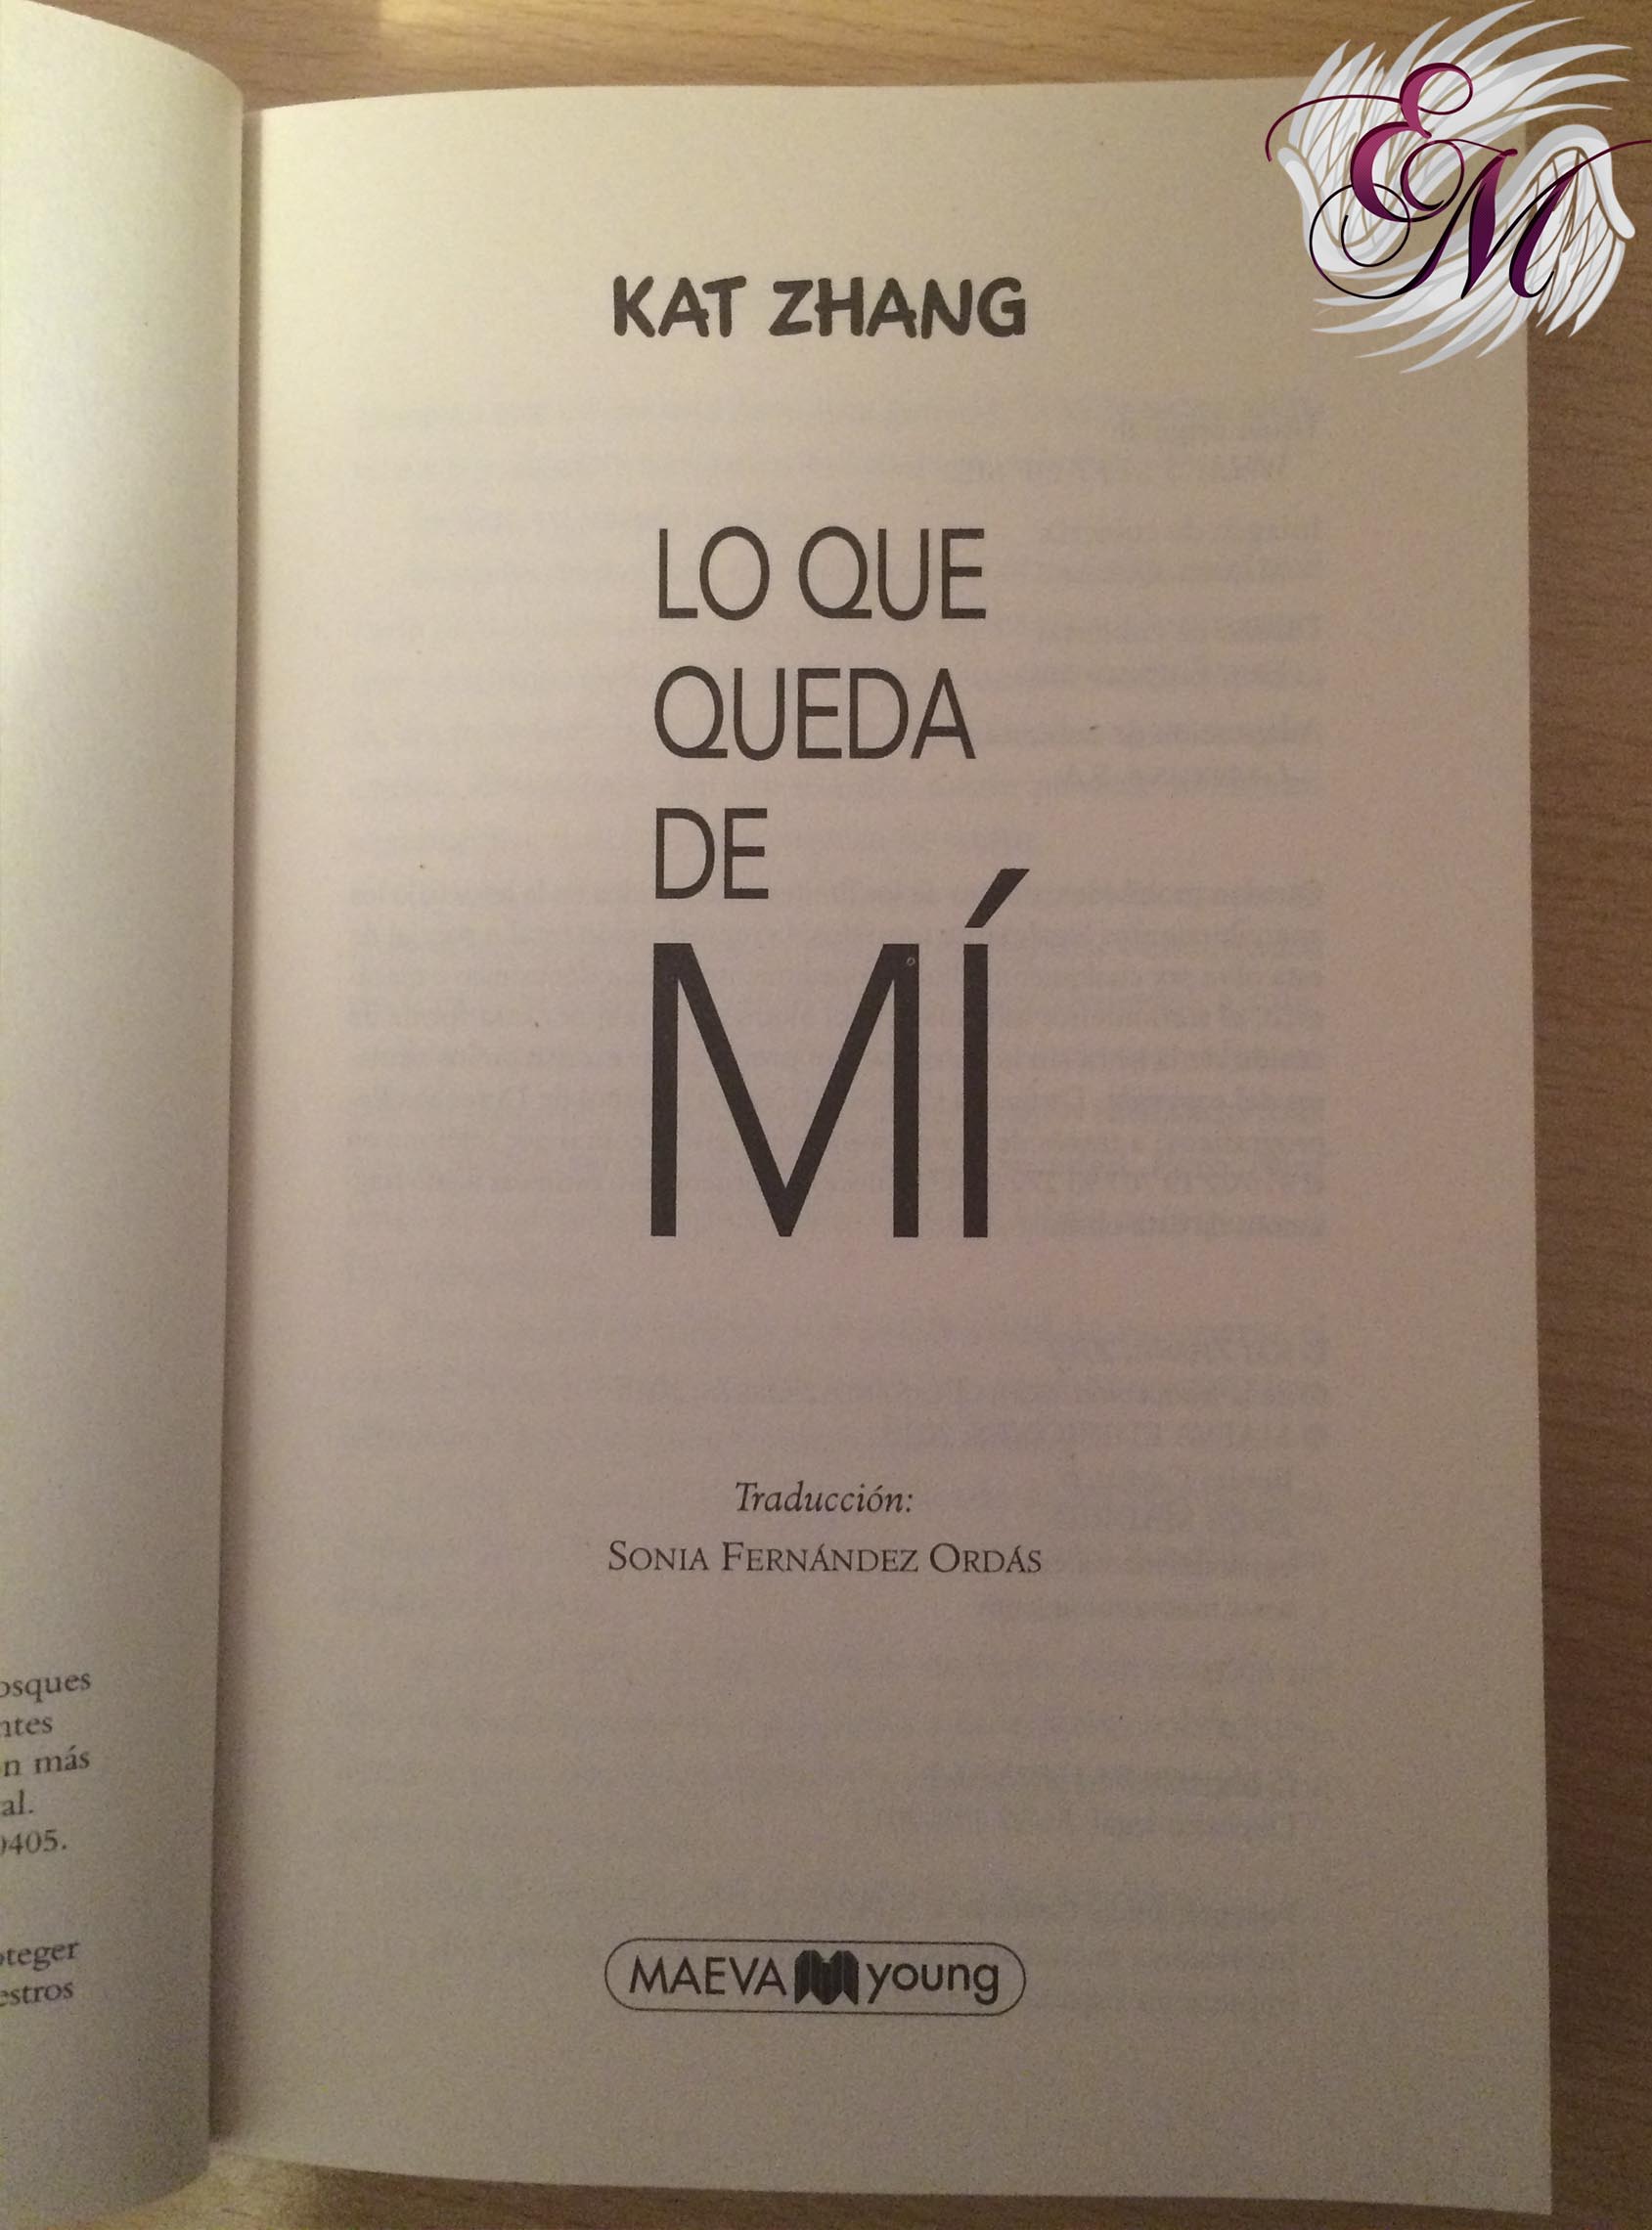 Lo que queda de mi, de Kat Zhang - Reseña